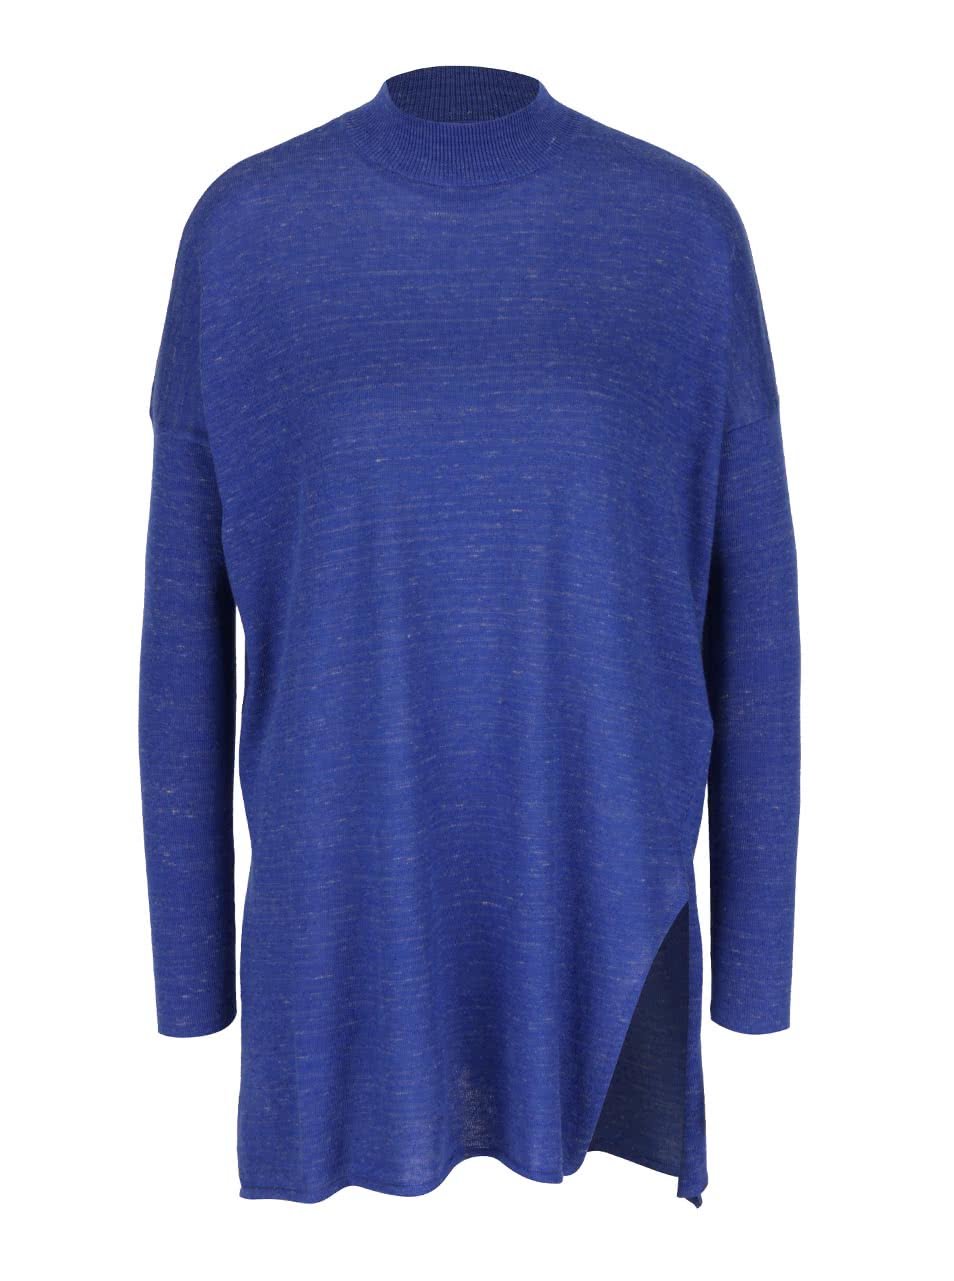 Tmavě modrý žíhaný volnější svetr s nízkým rolákem Vero Moda Ludwig